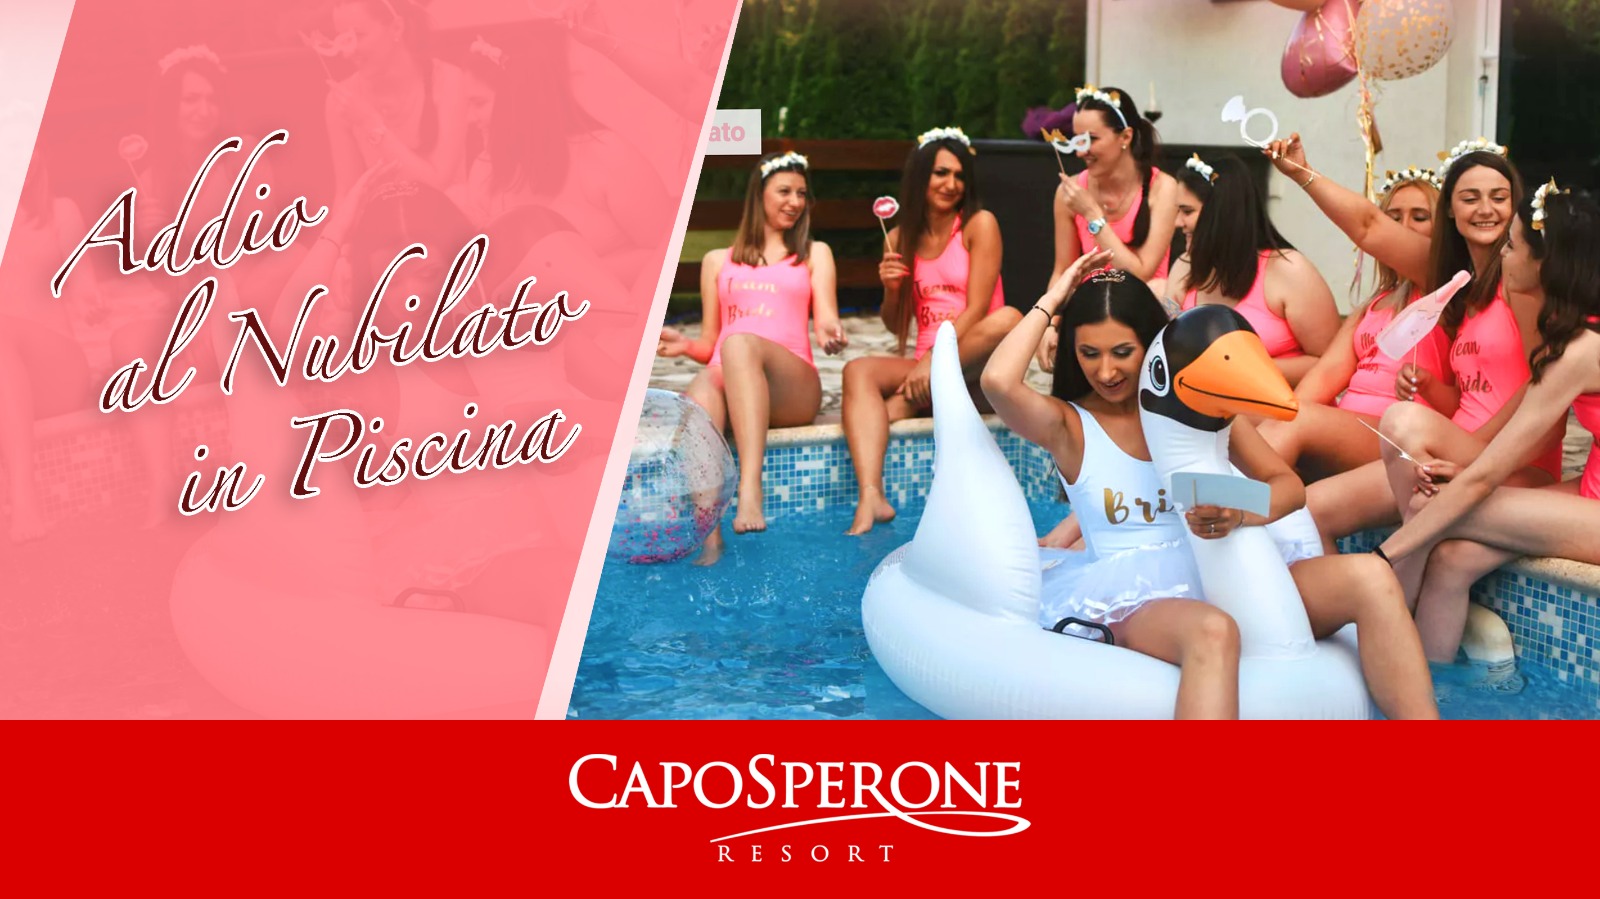 CapoSperone Resort&Spa Addio Al Nubilato In Piscina